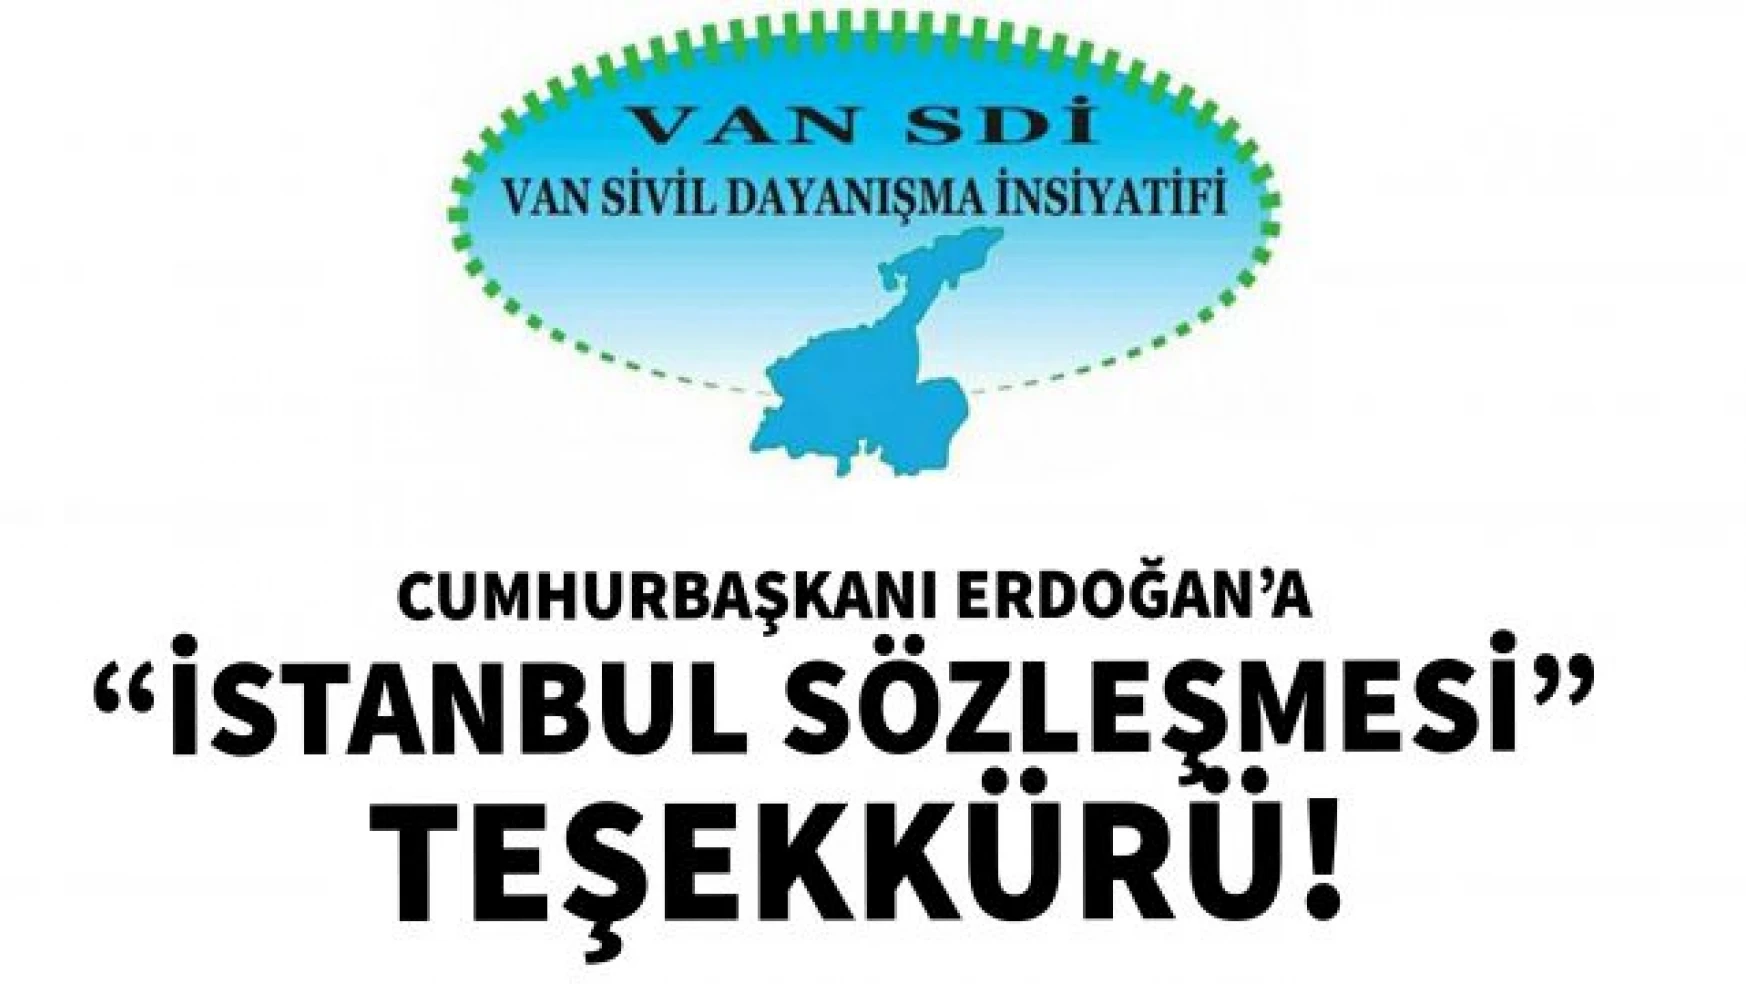 Van SDİ, Cumhurbaşkanı Erdoğan'a 'İstanbul Sözleşmesi' nedeniyle teşekkür etti